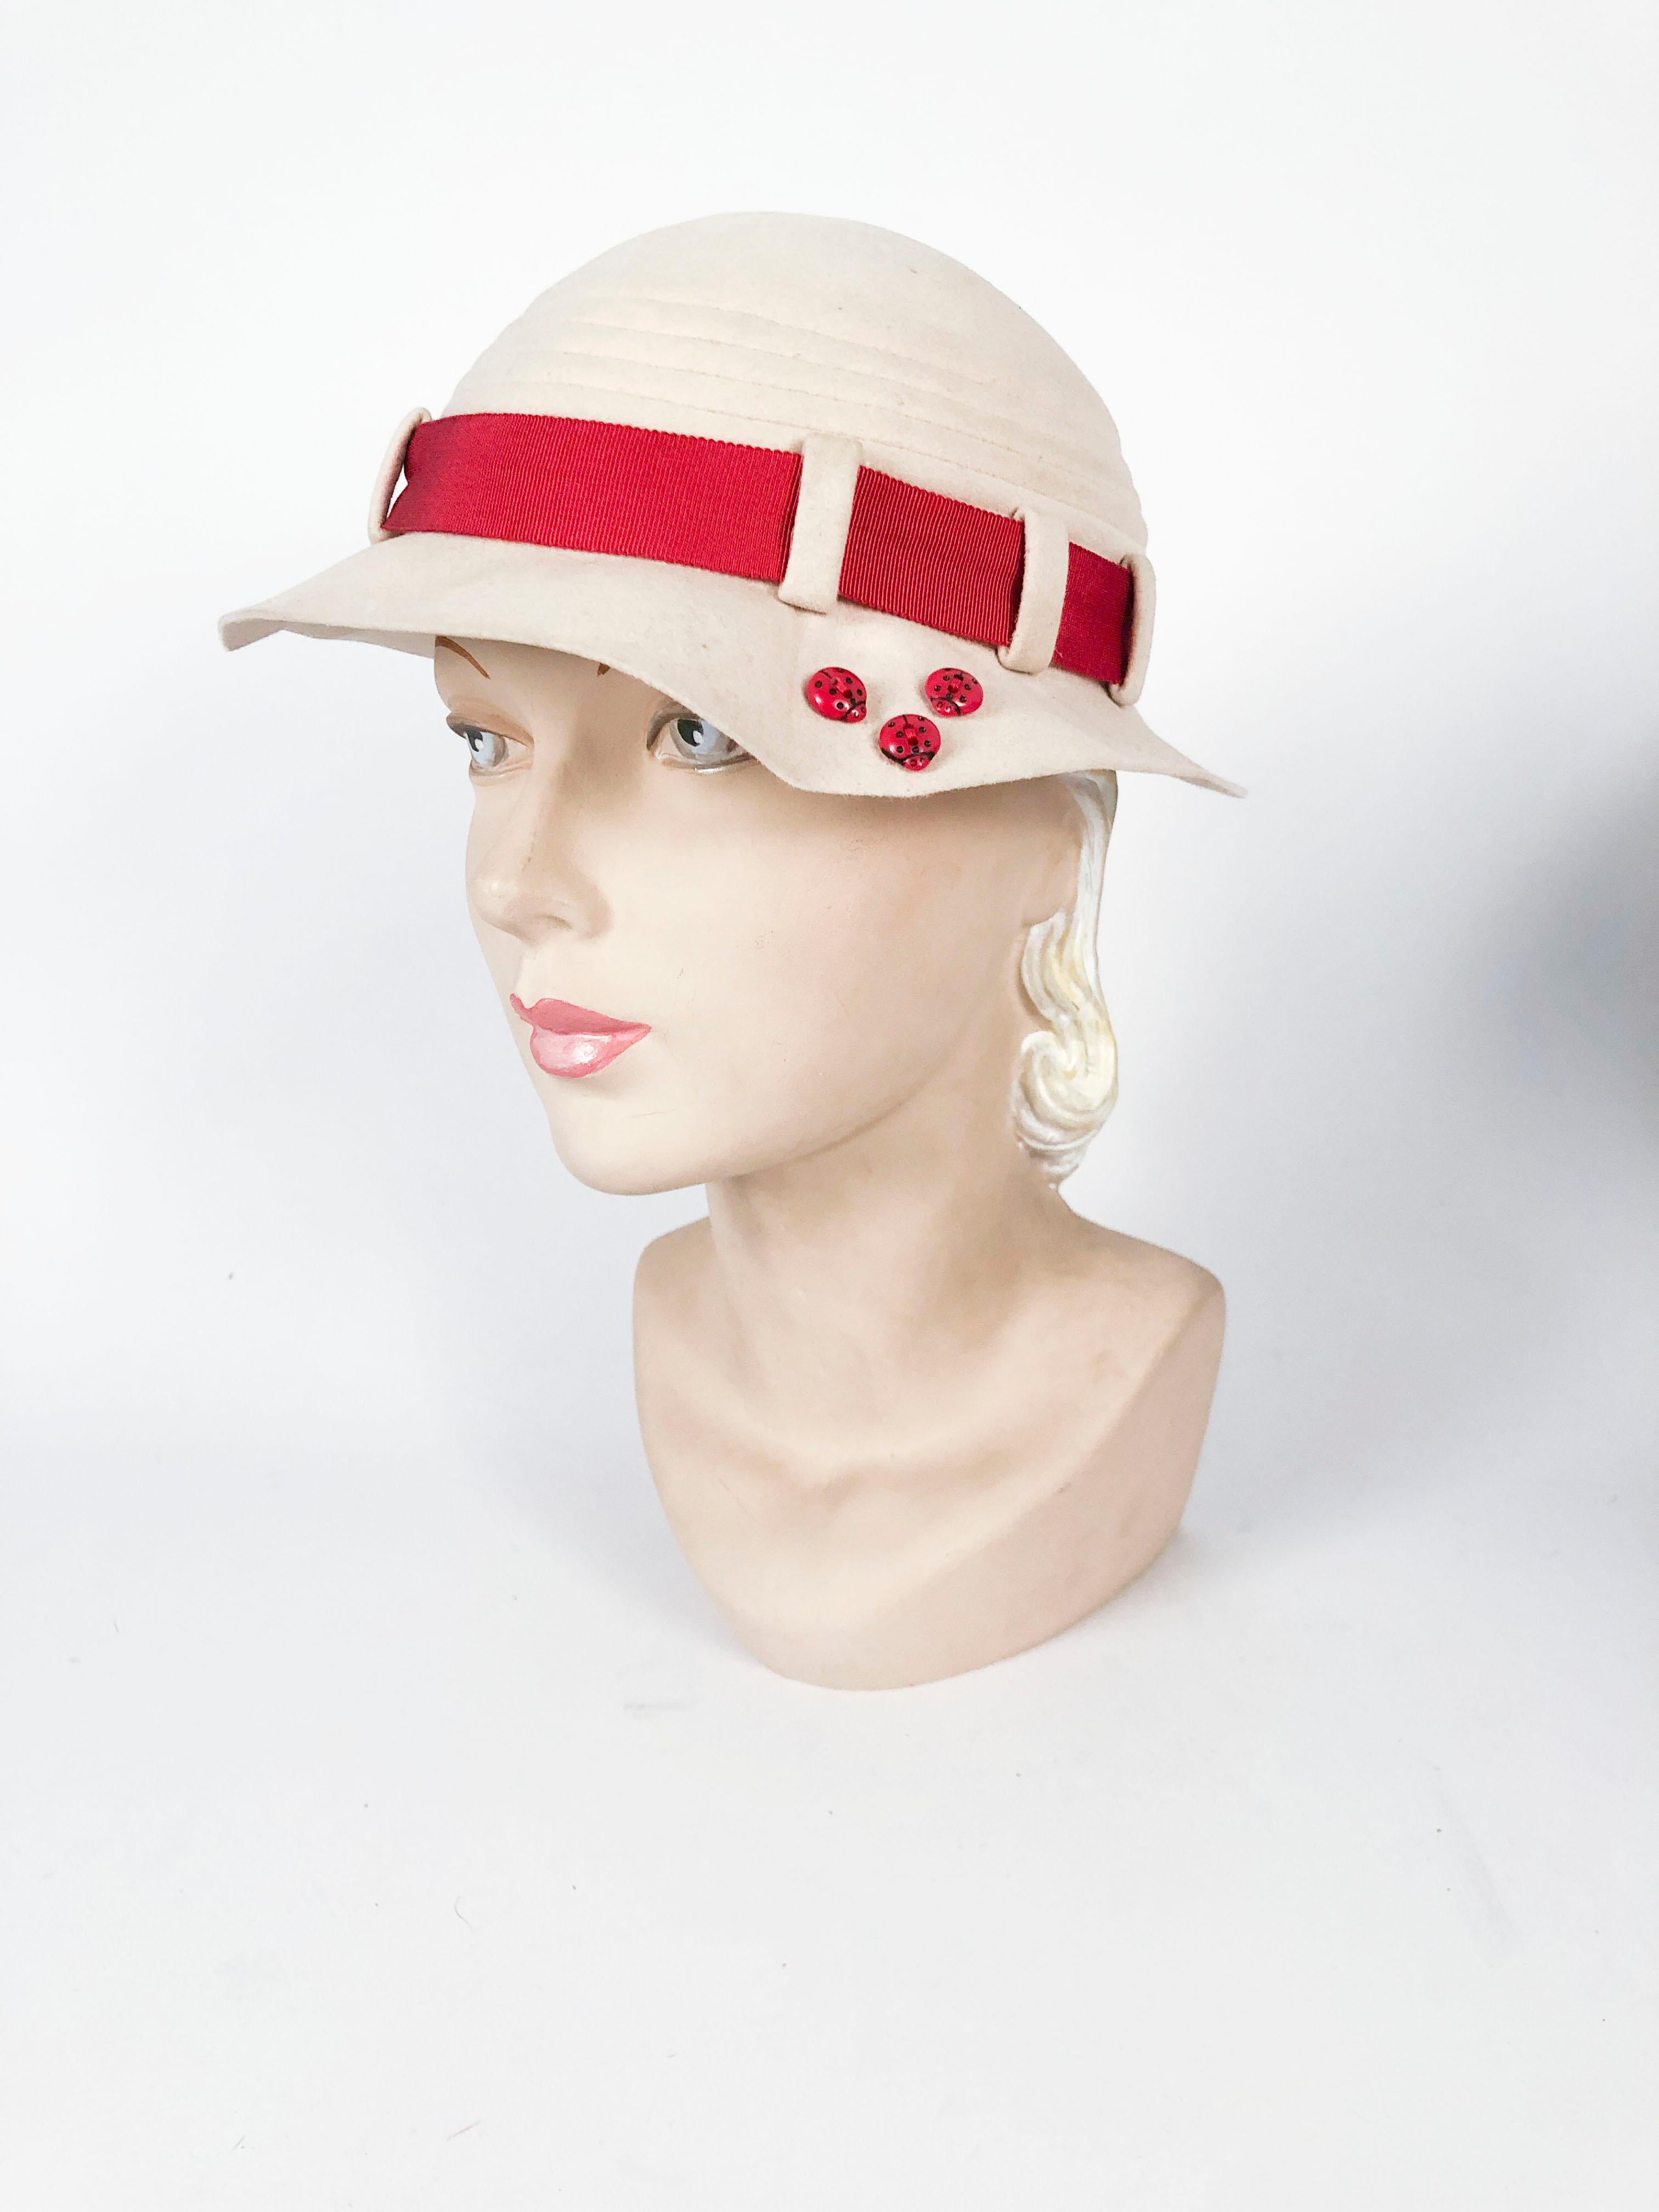 Sombrero esculpido de fieltro de piel beige de los años 30 con banda de grosgrain de color óxido rematada con un botón art déco. El ala esculpida tiene 3 detalles de mariquita que añaden asimetría al sombrero. 